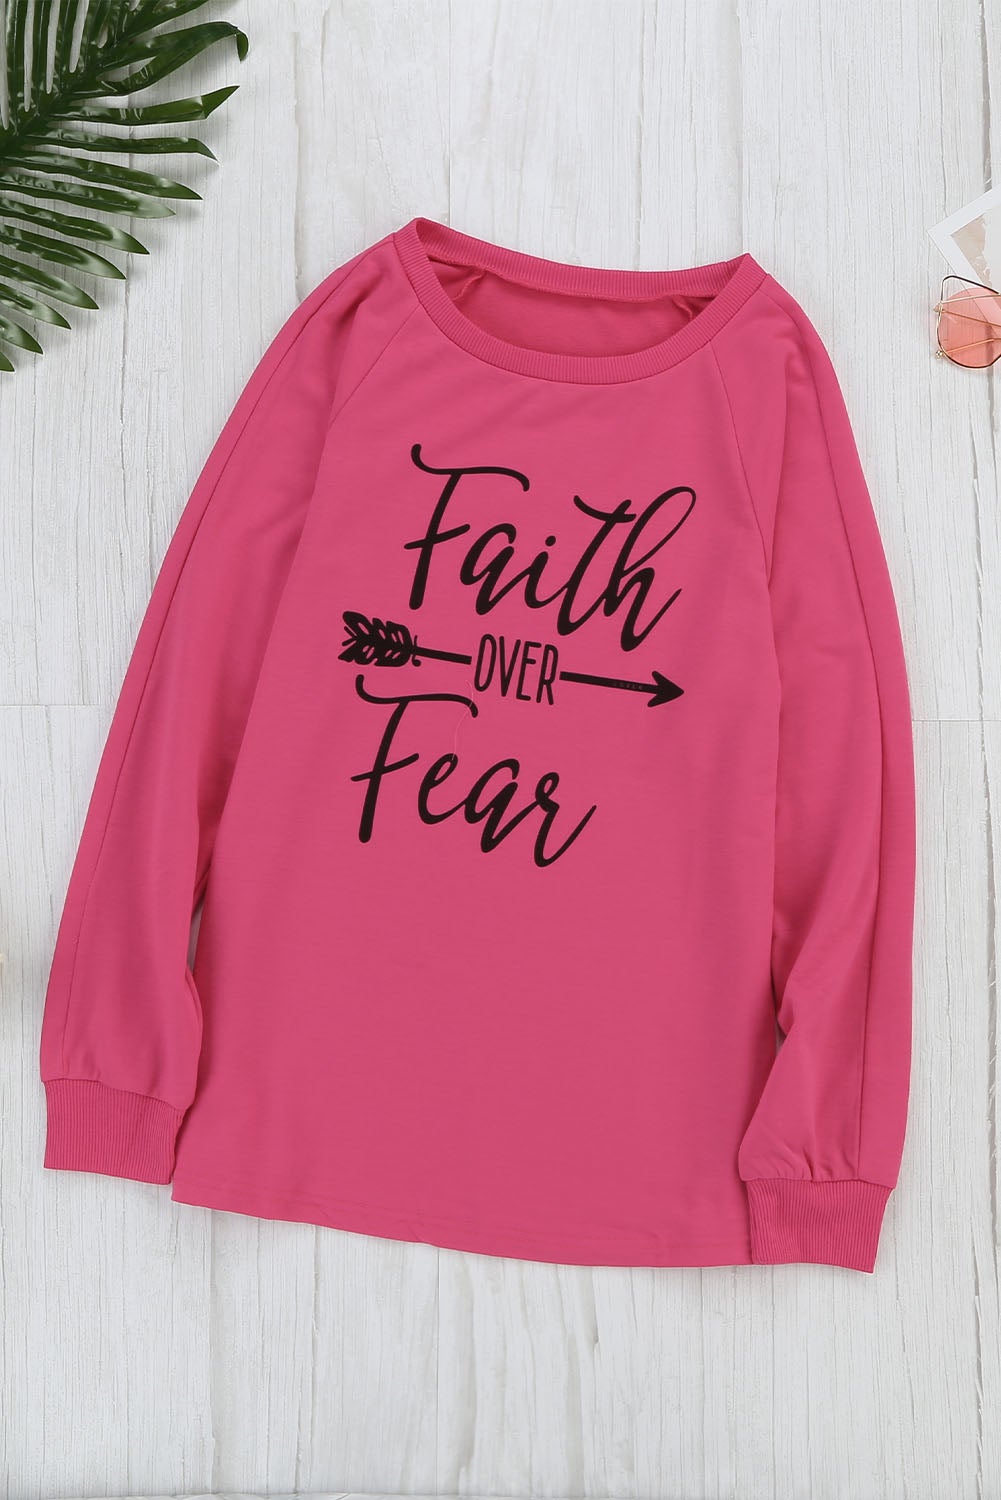 Faith Over Fear Top - Tuddy's House